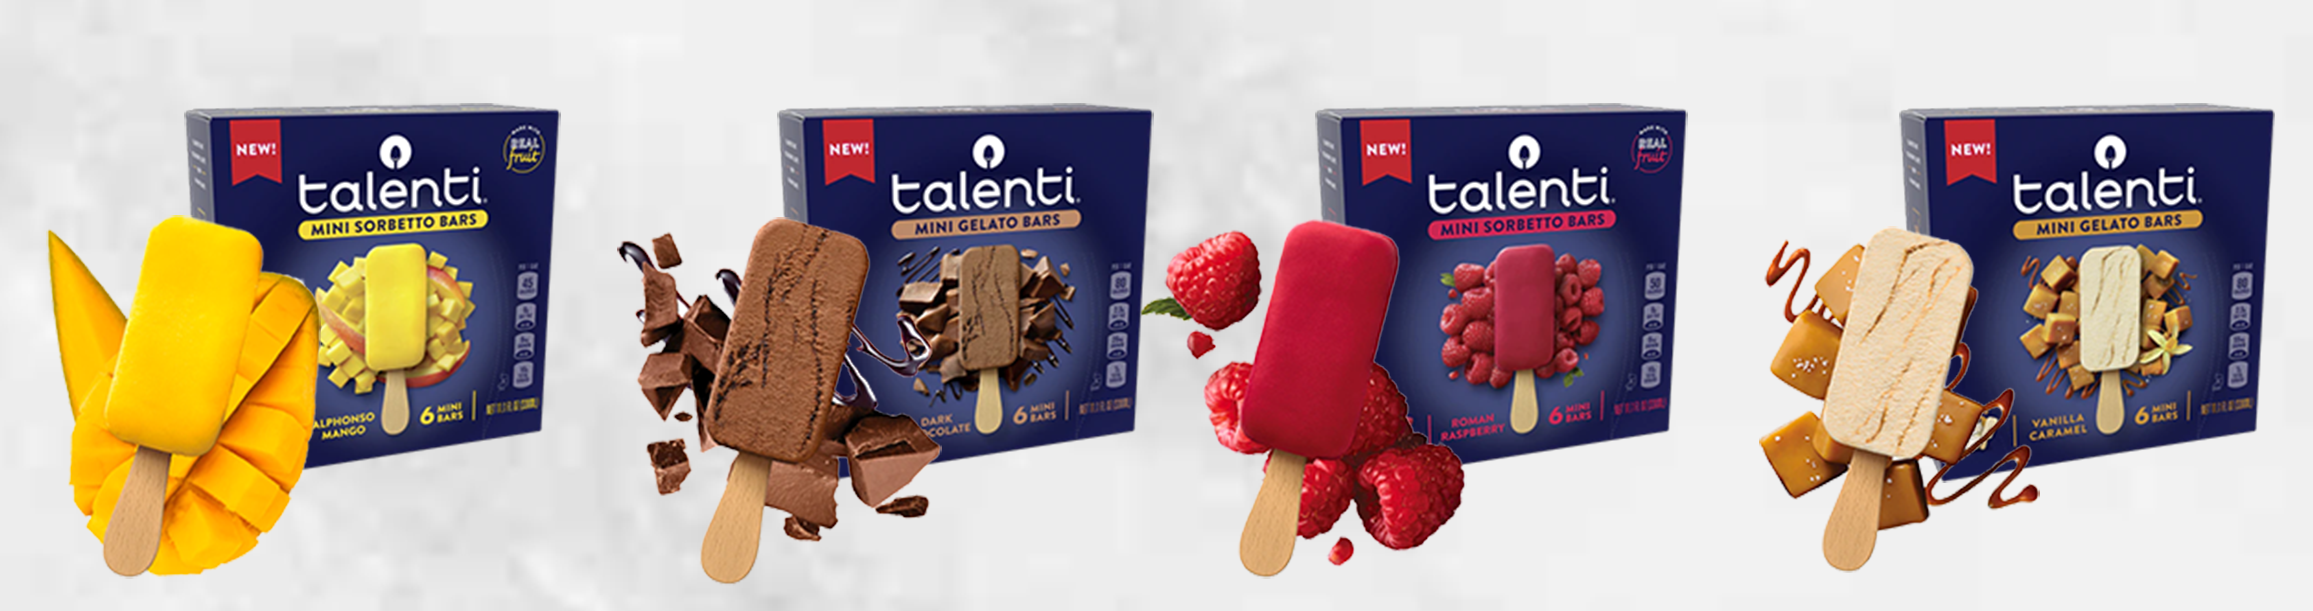 Talenti gelato launches new flavors - Beverly Press & Park Labrea